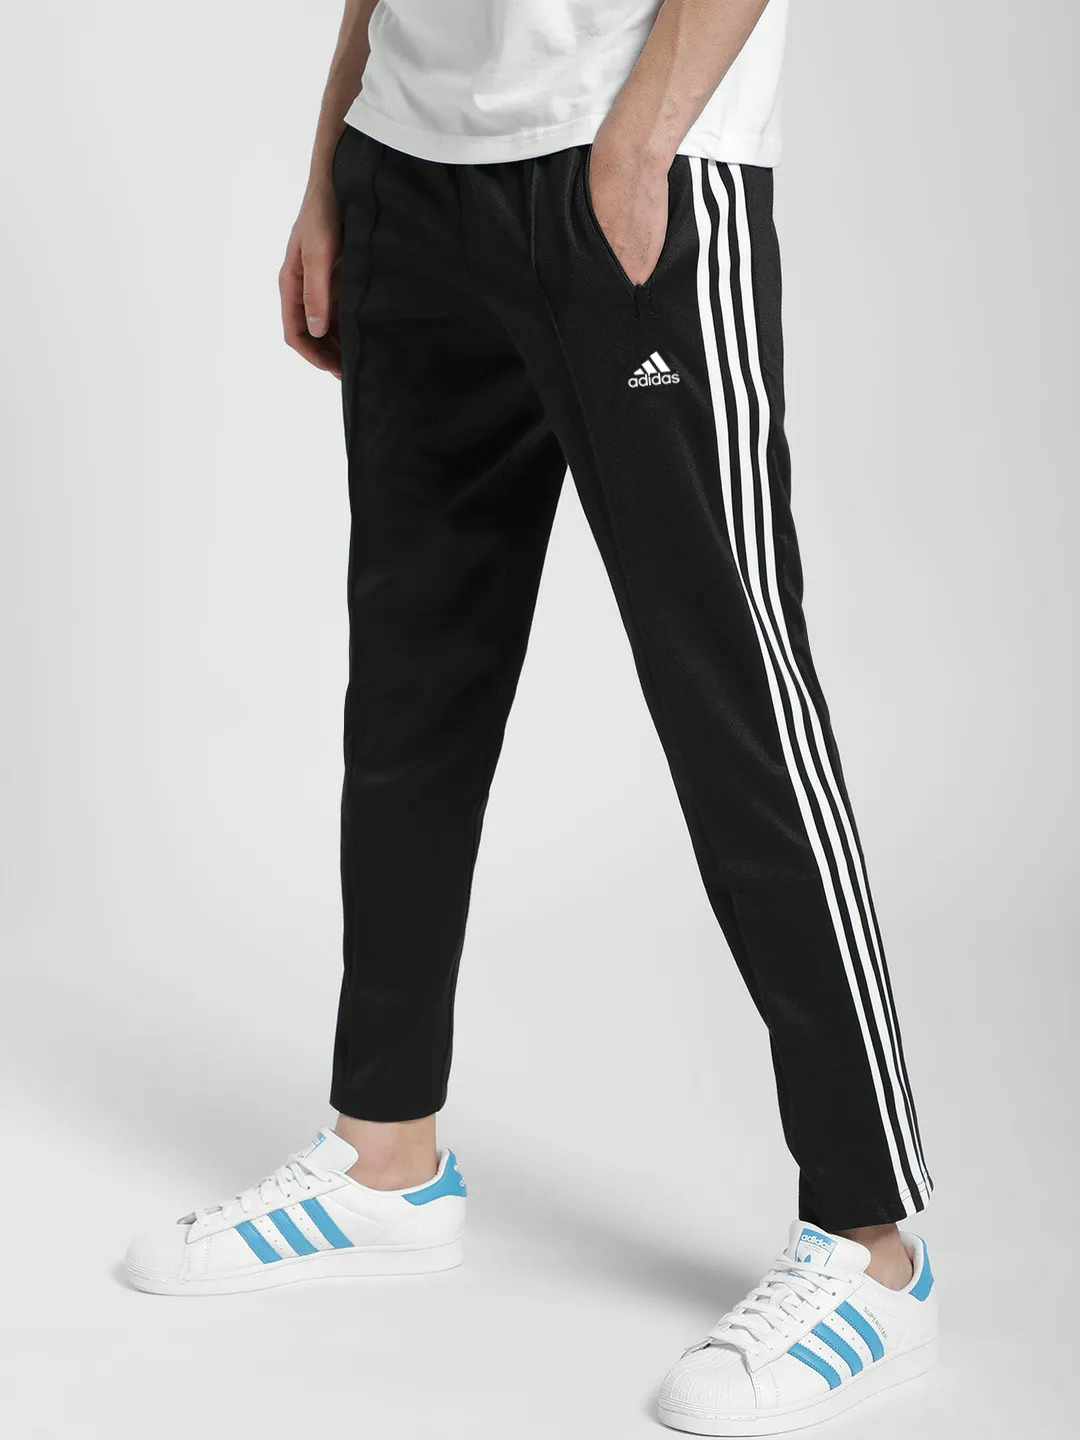 Buy Adidas Black 3 Strips Track Pant For Men Online - Get 80% Off